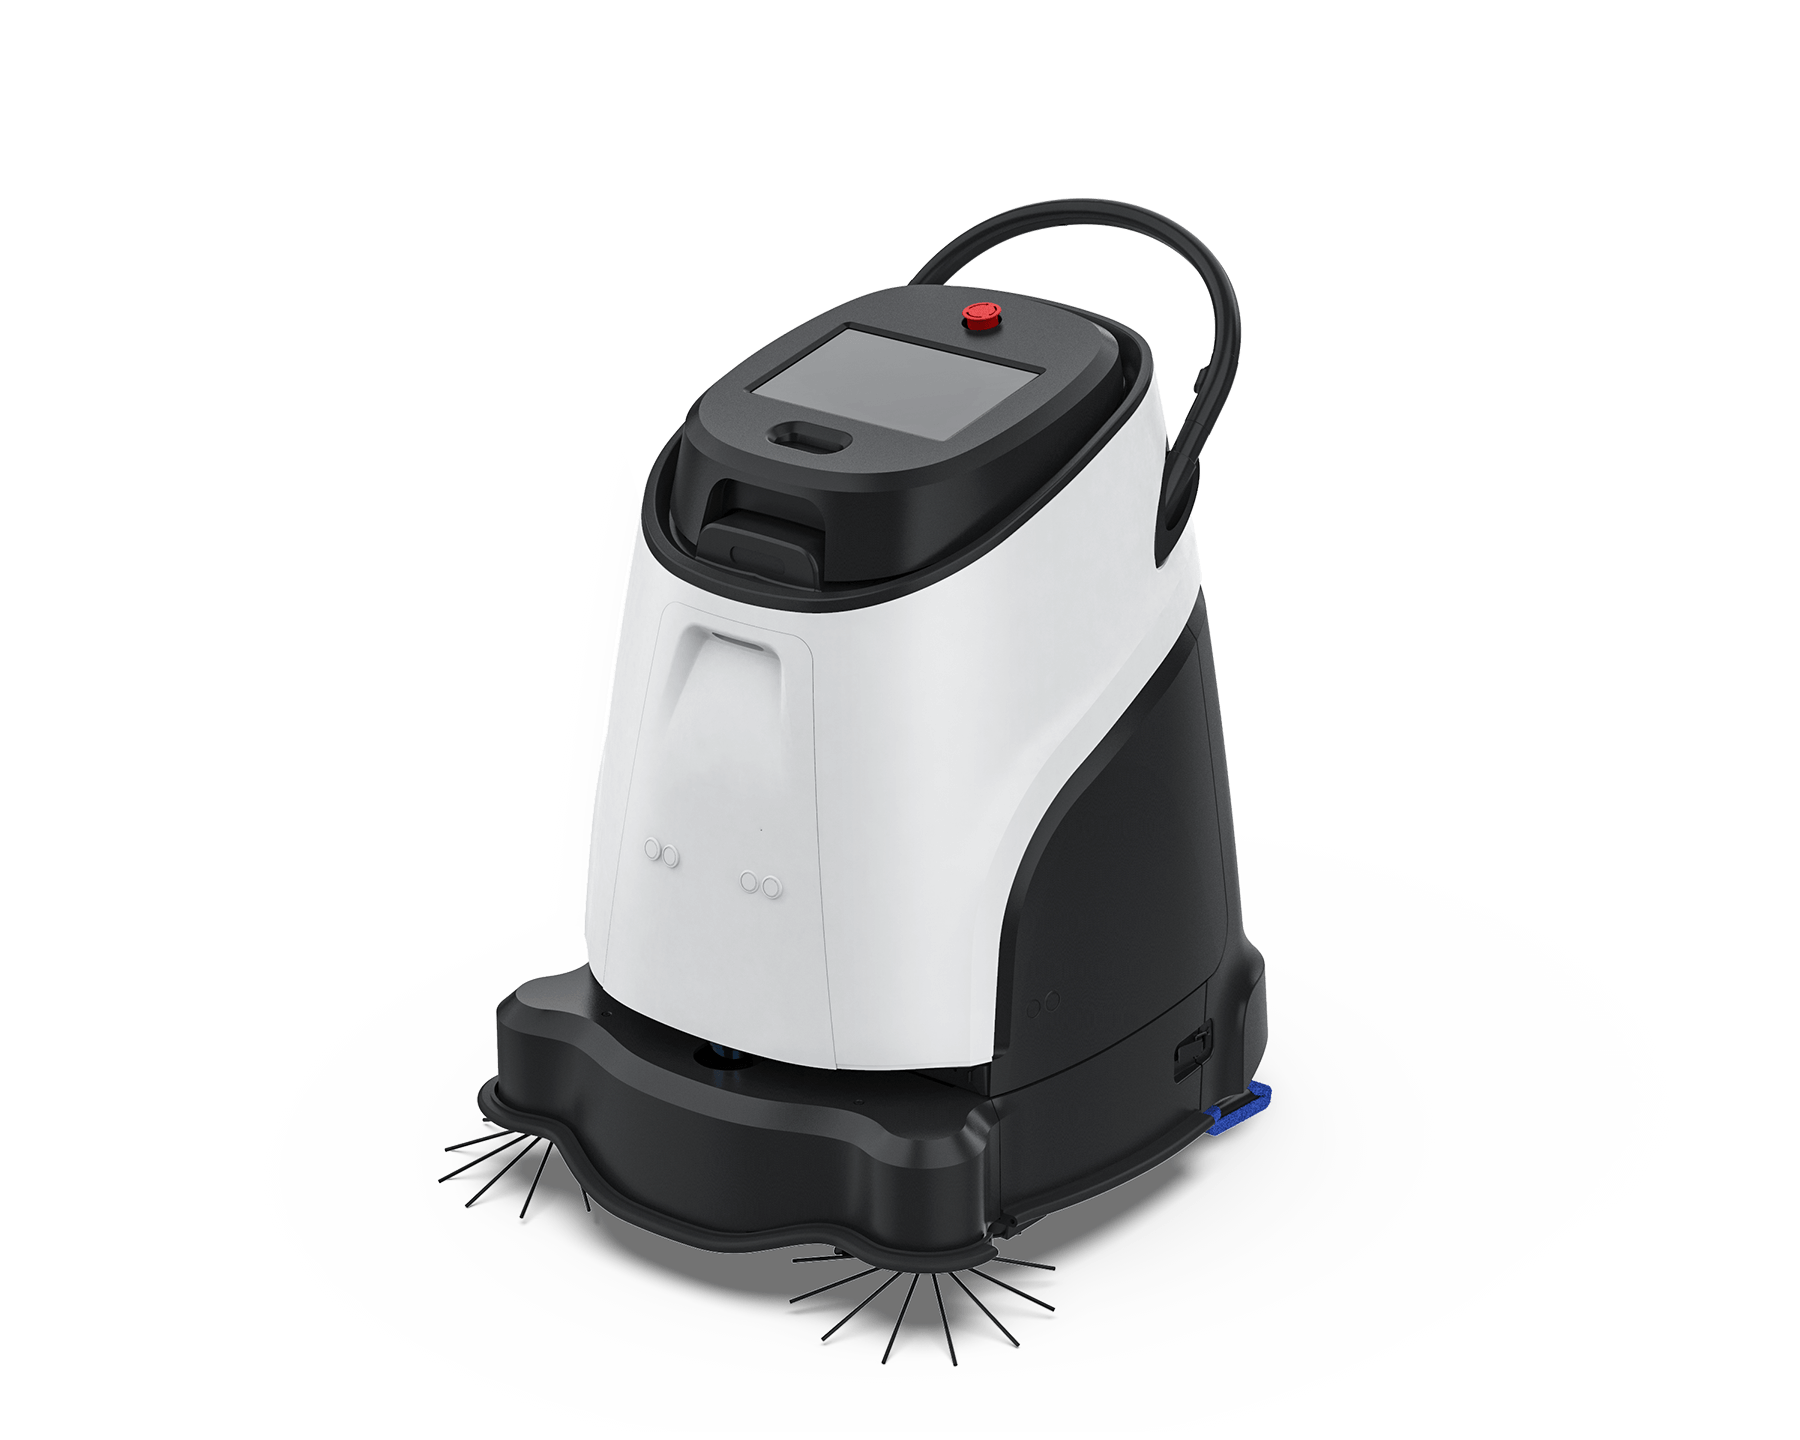 Le robot aspirateur Vacuum 40 Pro aspire de manière autonome et nettoie automatiquement de manière professionnelle